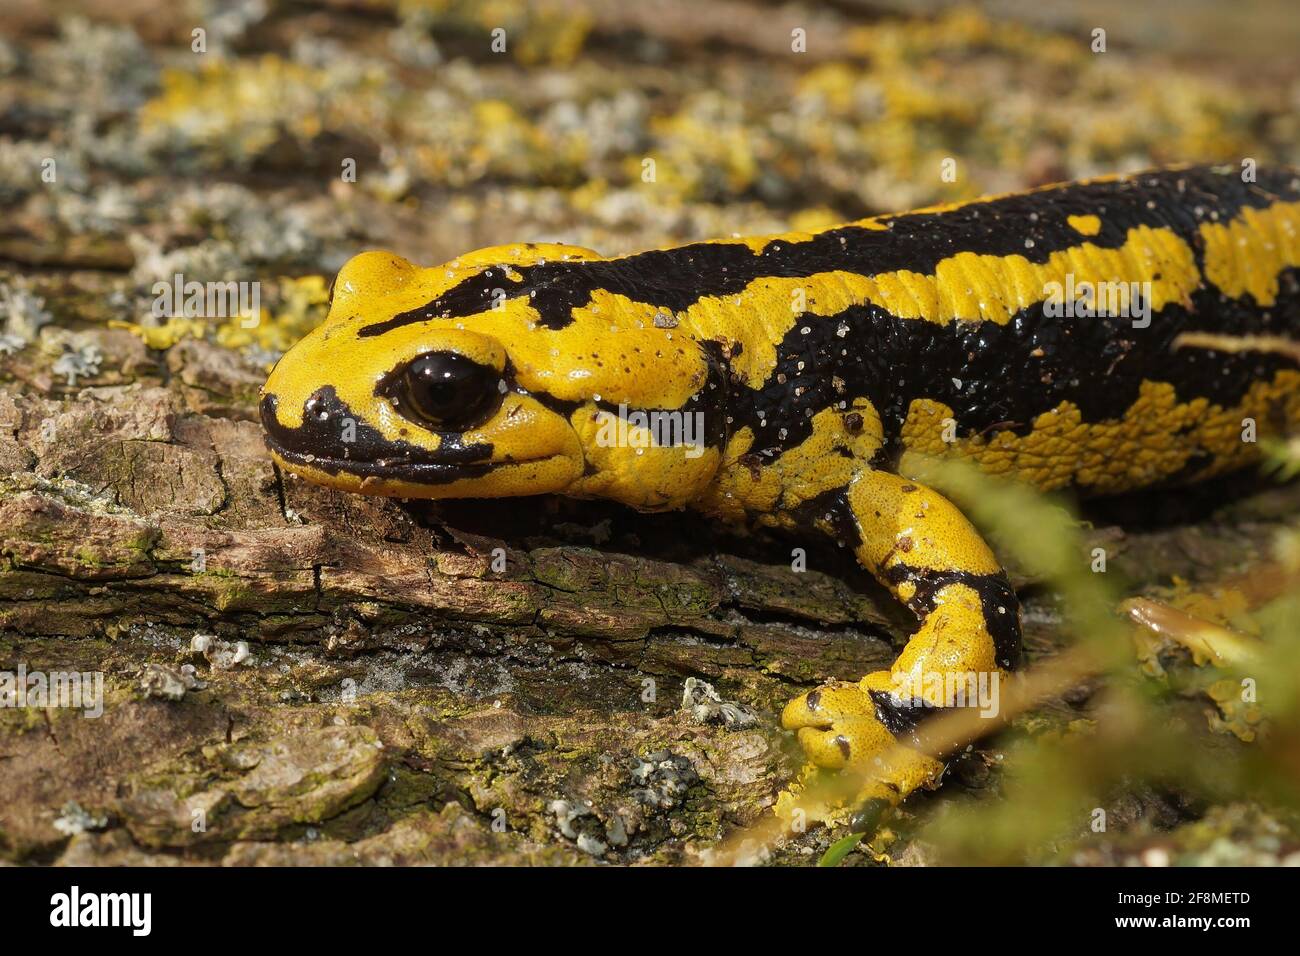 Bright yellow-colored Salamandra bernardezi on the wooden surface Stock Photo